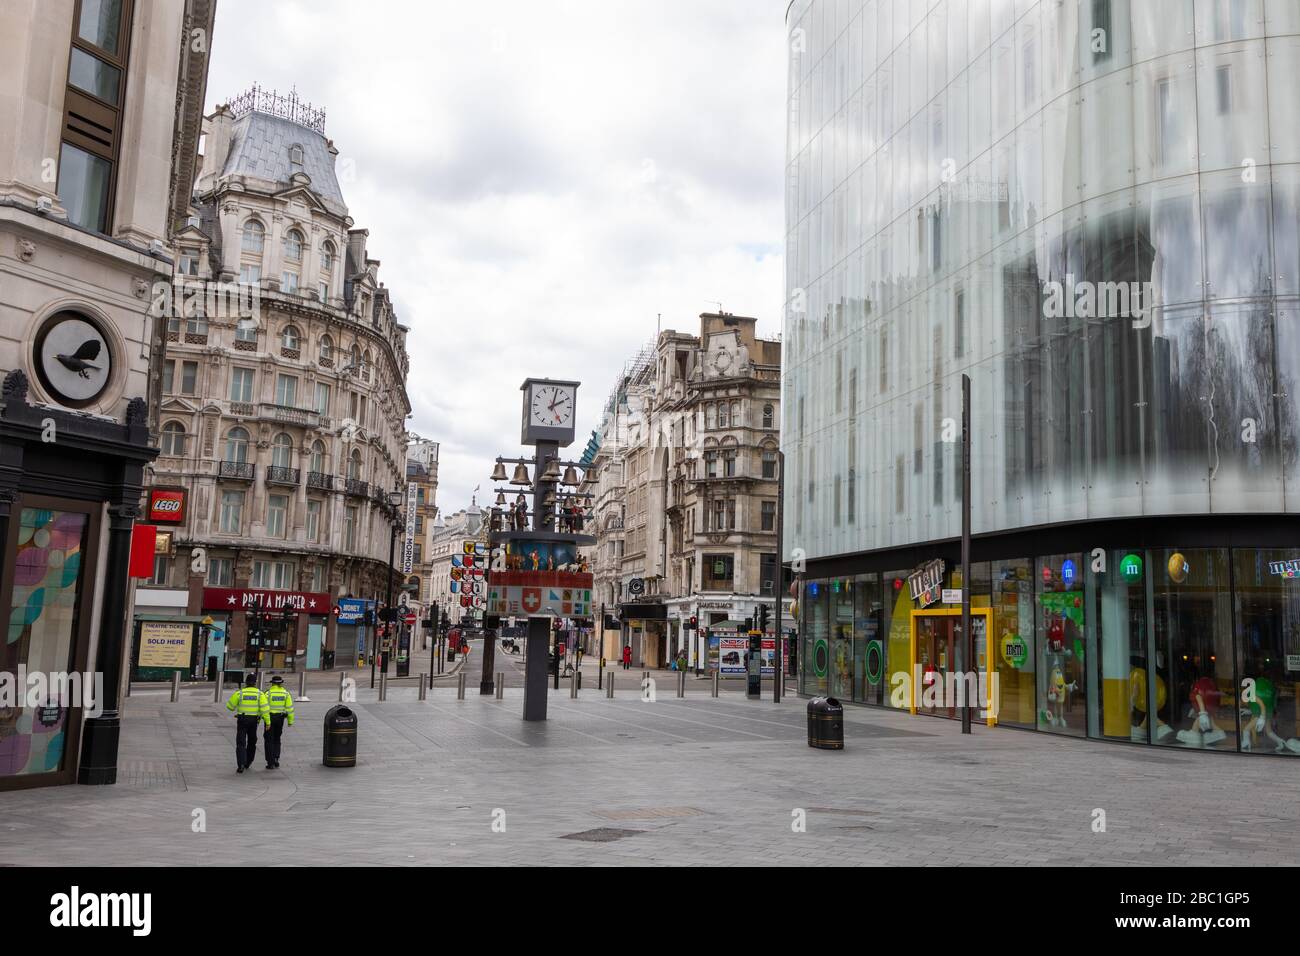 Ein menschenleerer Leicester Square im Zentrum Londons während des Ausbruchs des Corona-Virus. Zwei einsame Polizisten sind zu sehen. Stockfoto